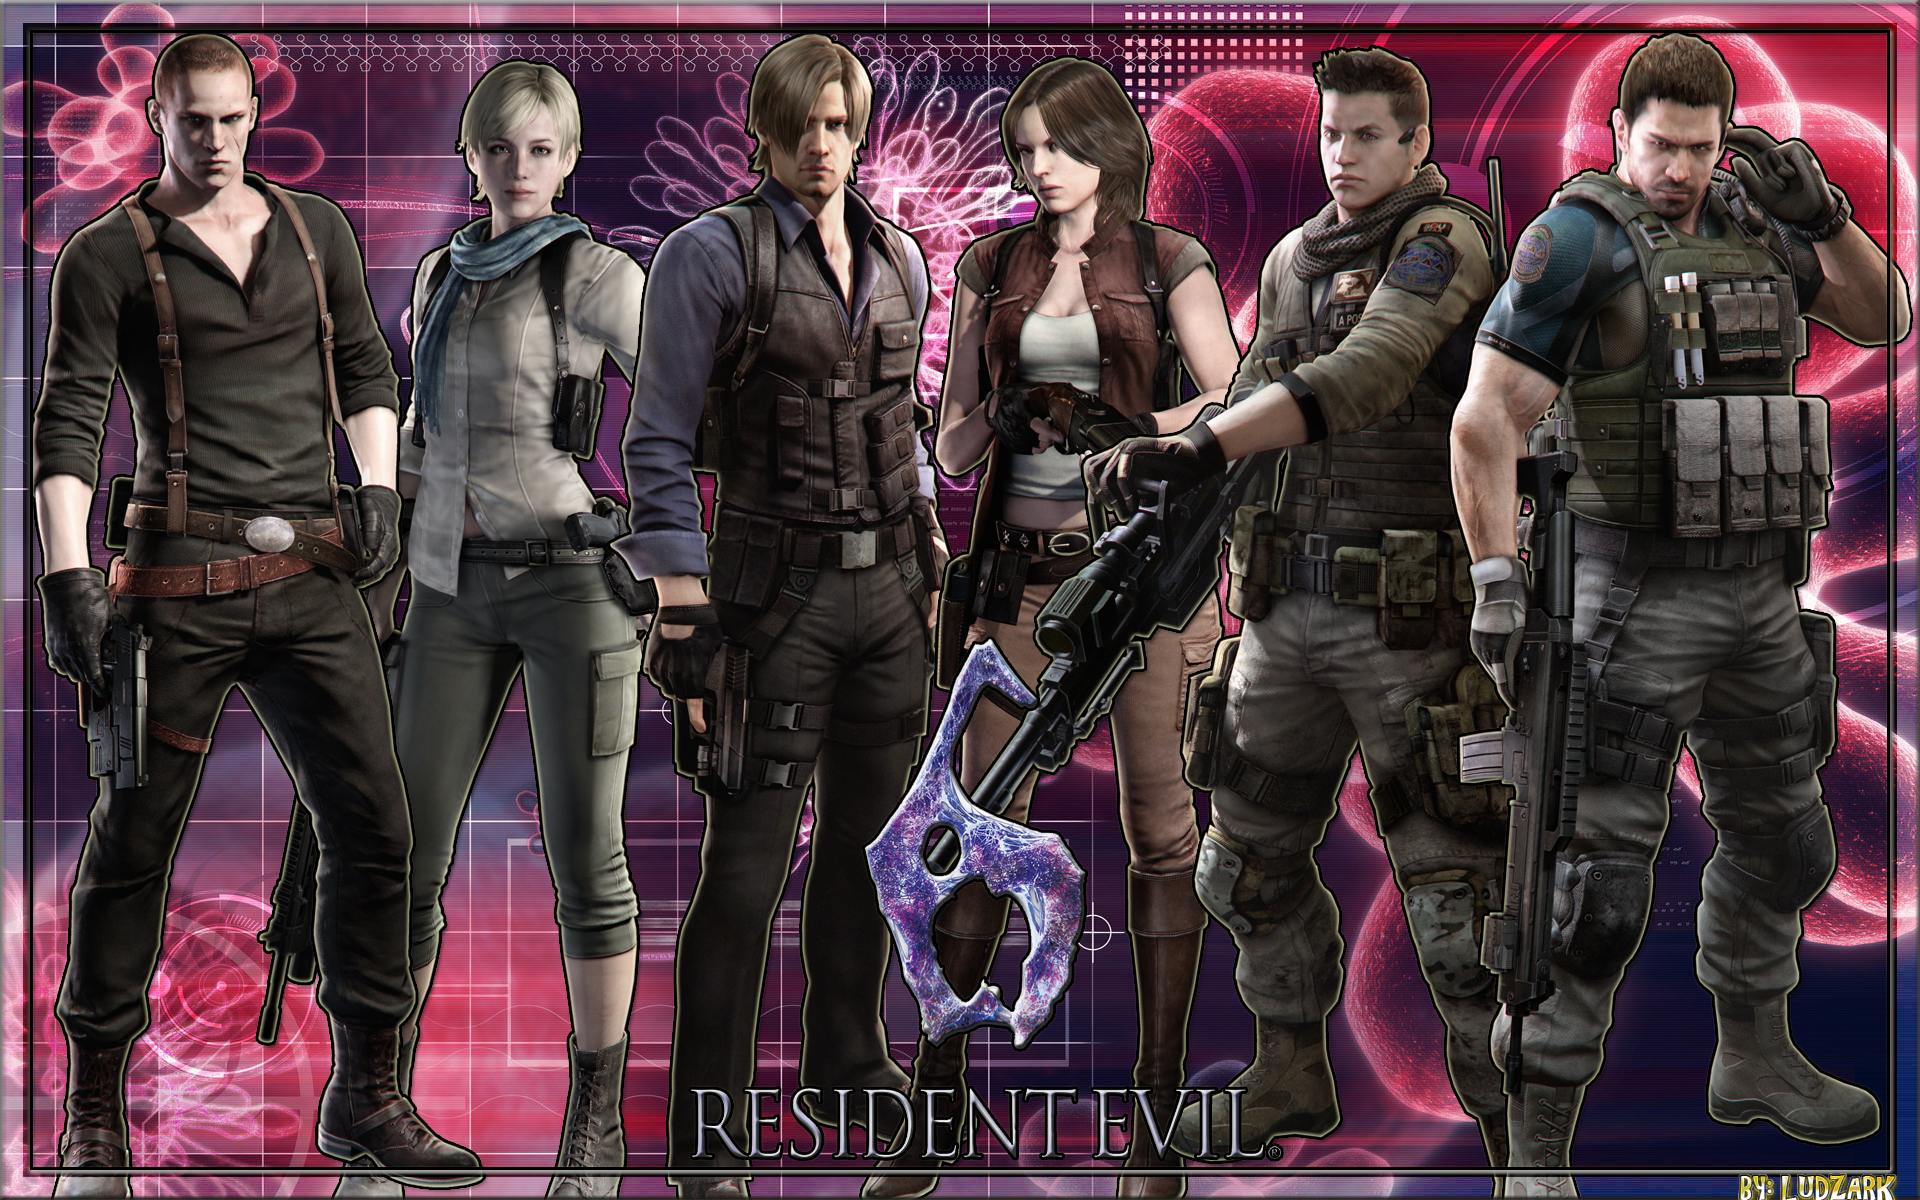 Прохождение игры Resident Evil 6 на 100 Кампания 4 за Аду Вонг Тактика против боссов, все секретные эмблемы, все достижения